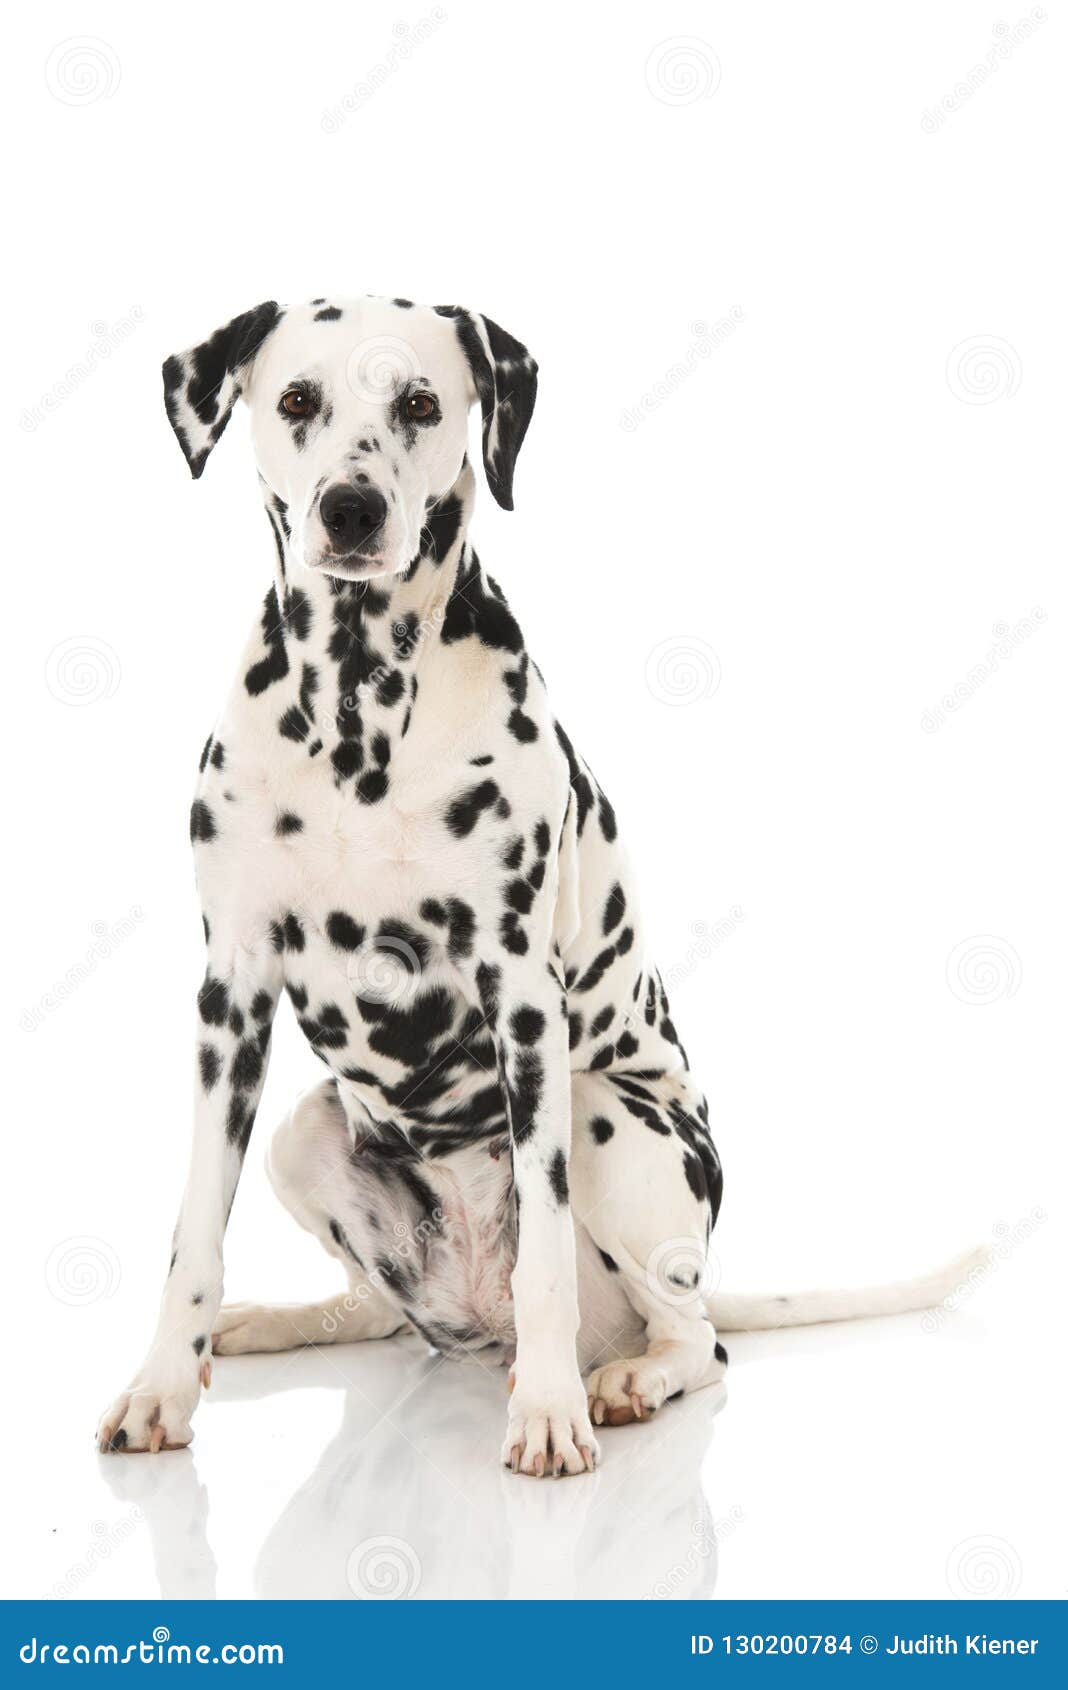 old dalmatian dog  on white background